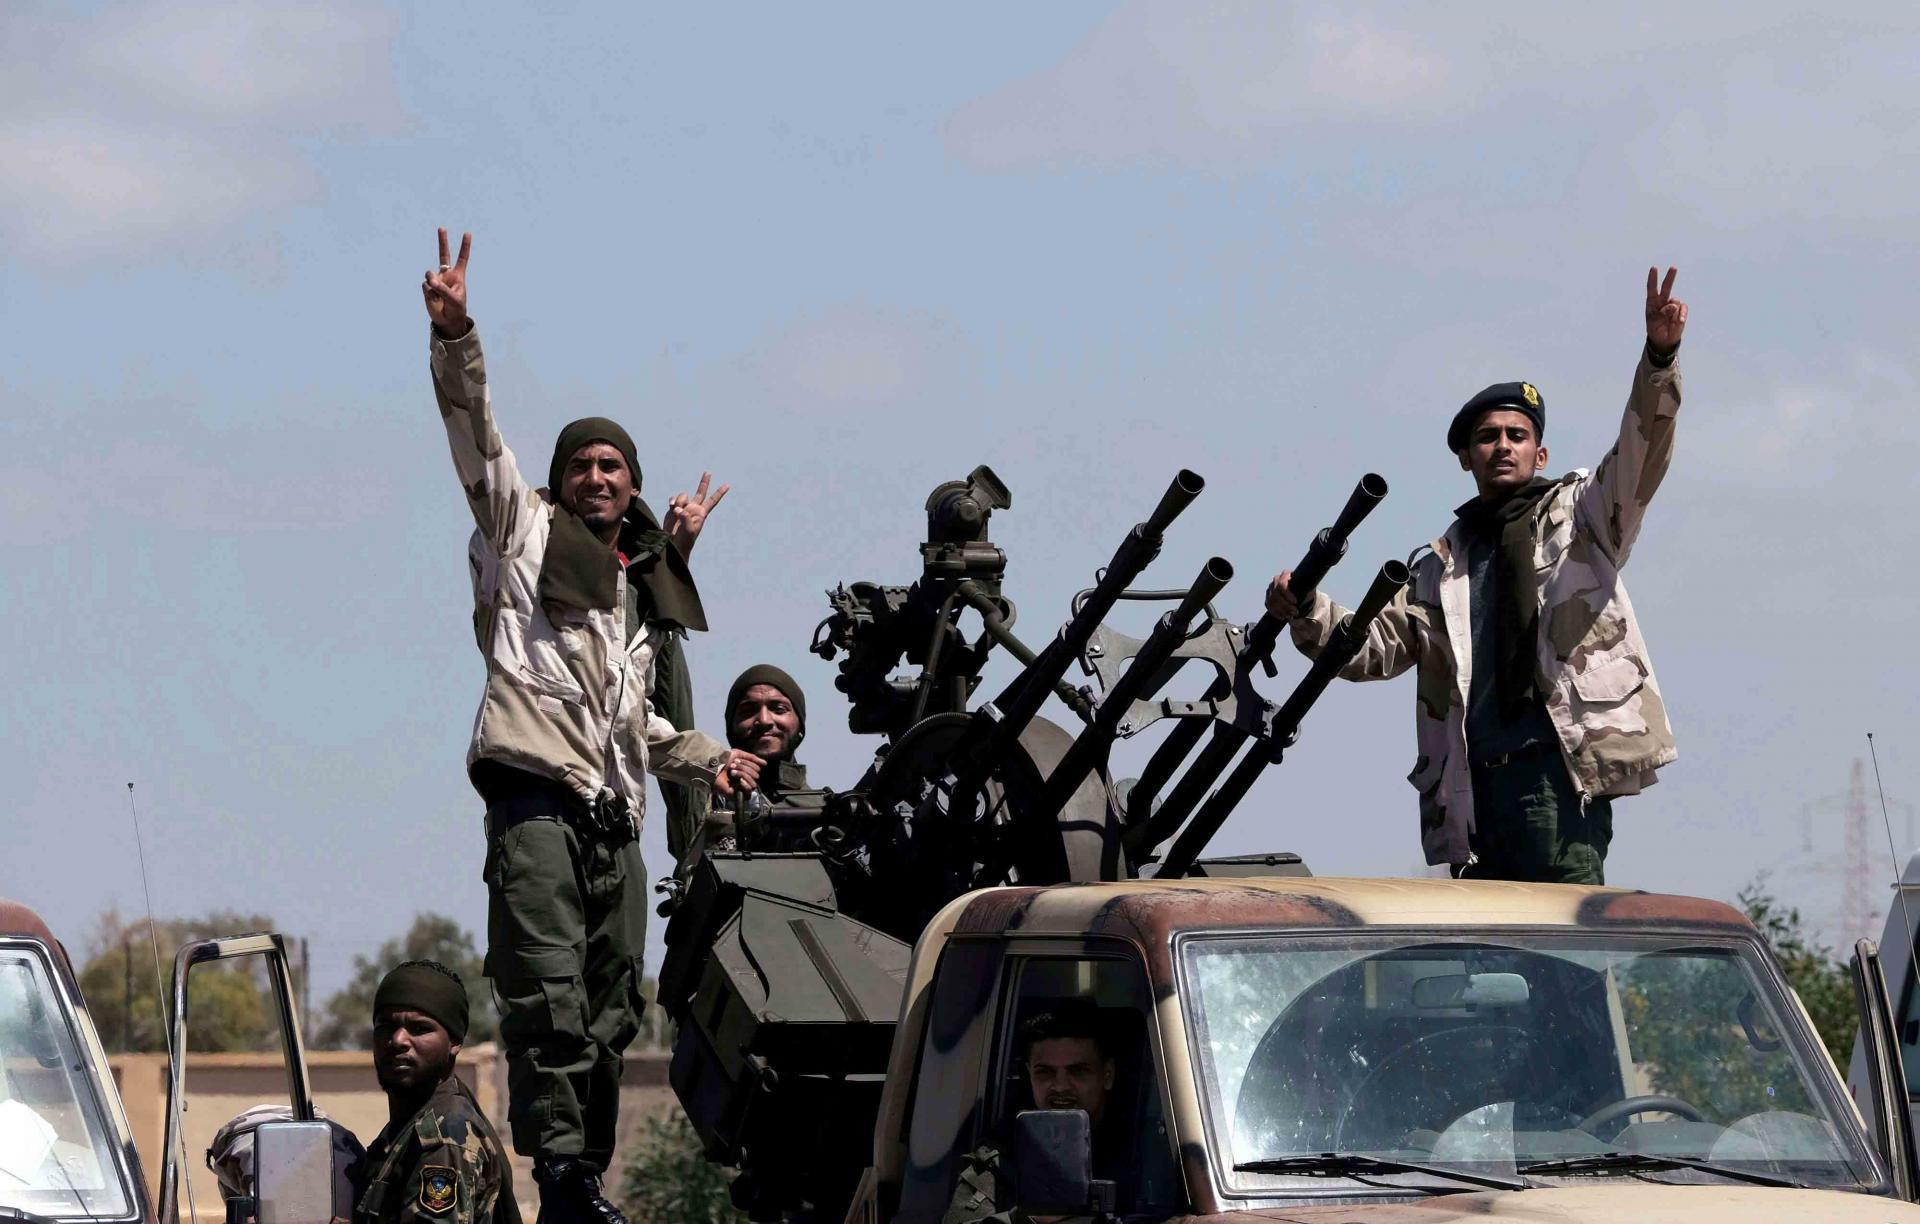 انتصارات الجيش الليبي امام قوات الوفاق اثارت غضب اردوغان